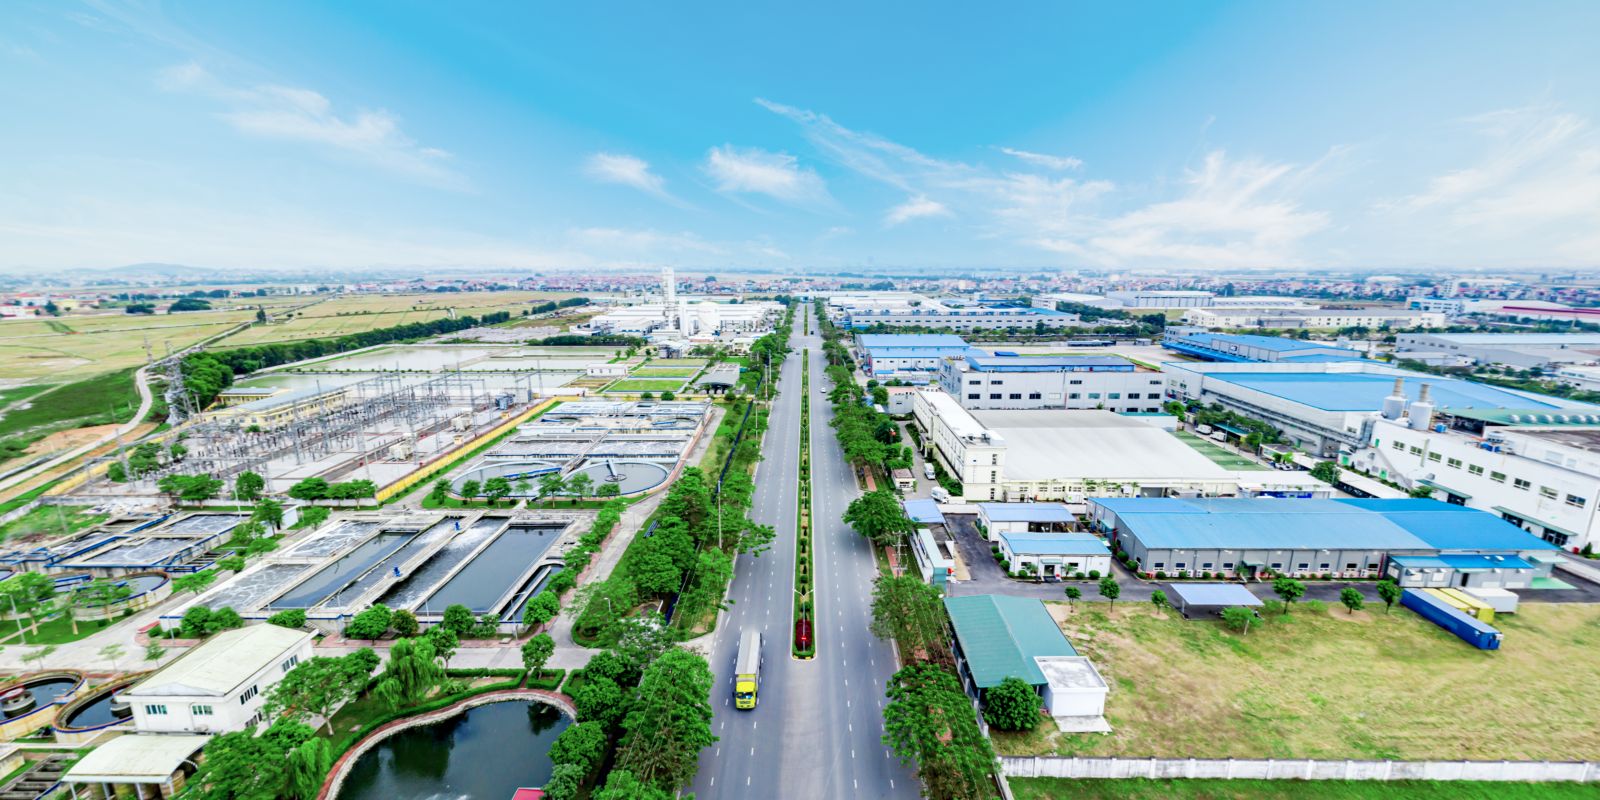 Khu công nghiệp Yên Phong của Viglacera được bình chọn là KCN tiêu biểu năm 2022 